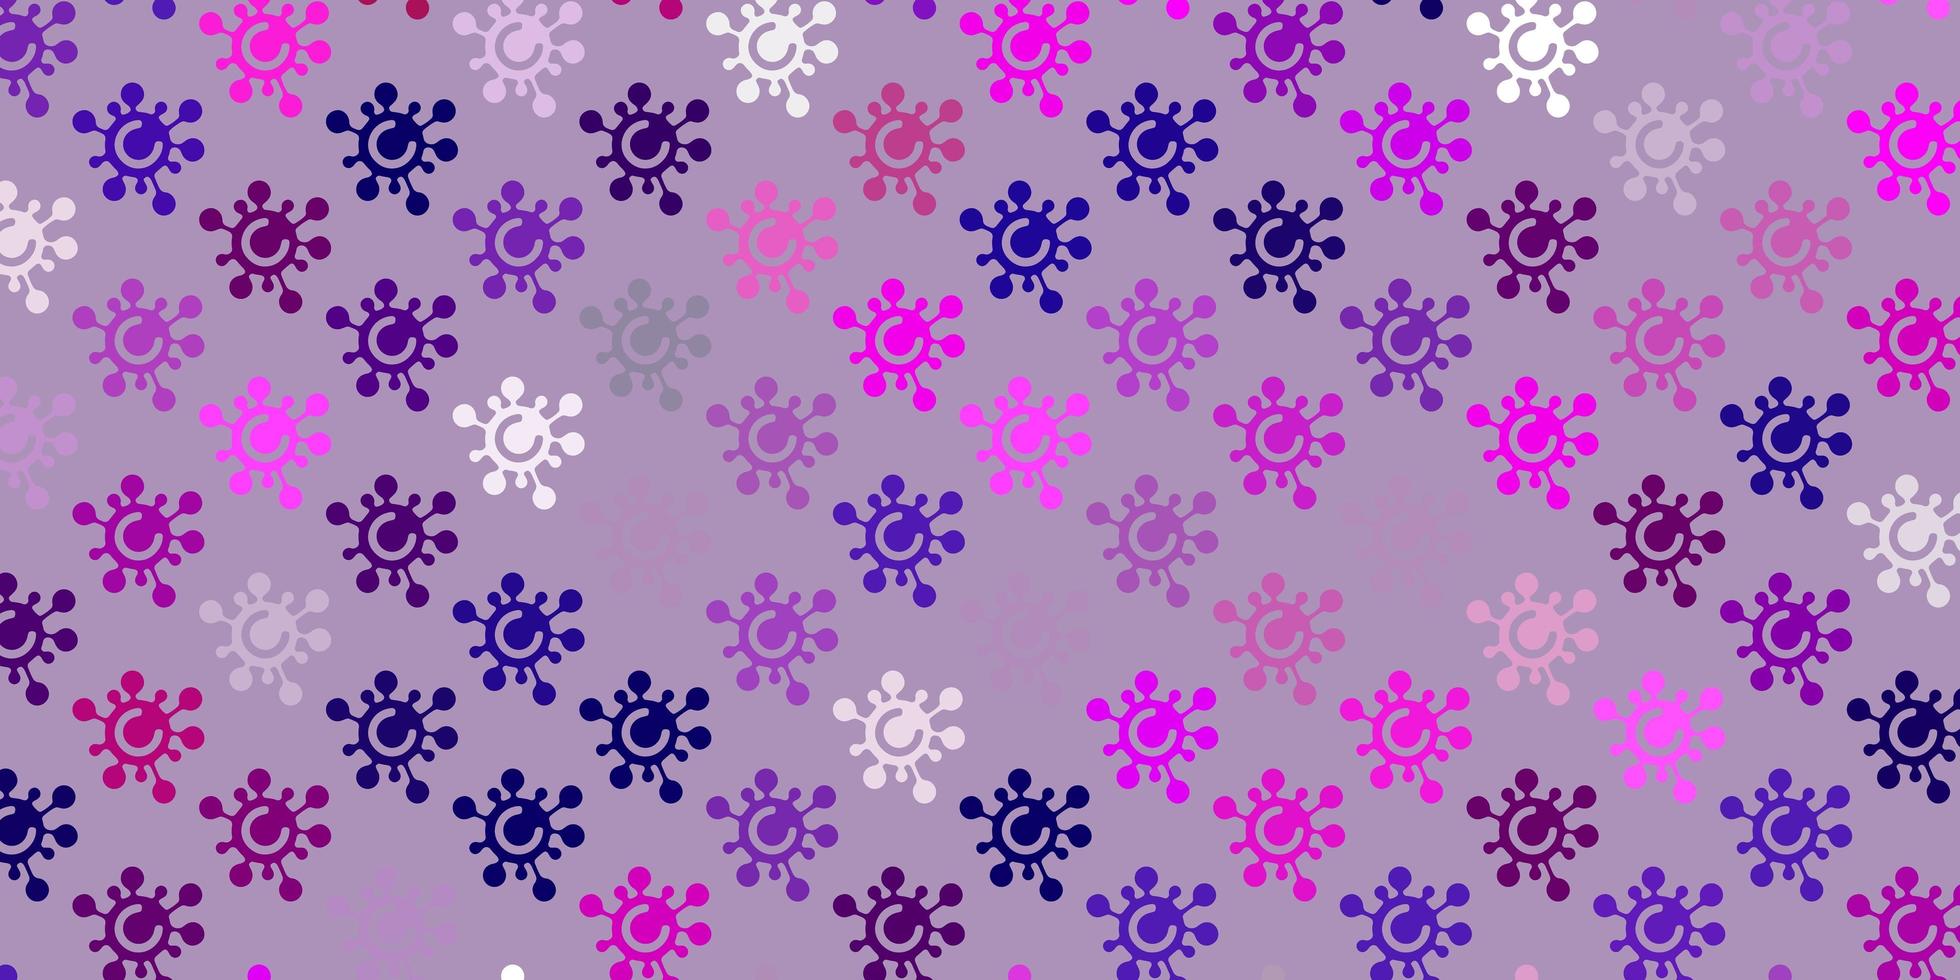 sfondo vettoriale viola chiaro, rosa con simboli di virus.